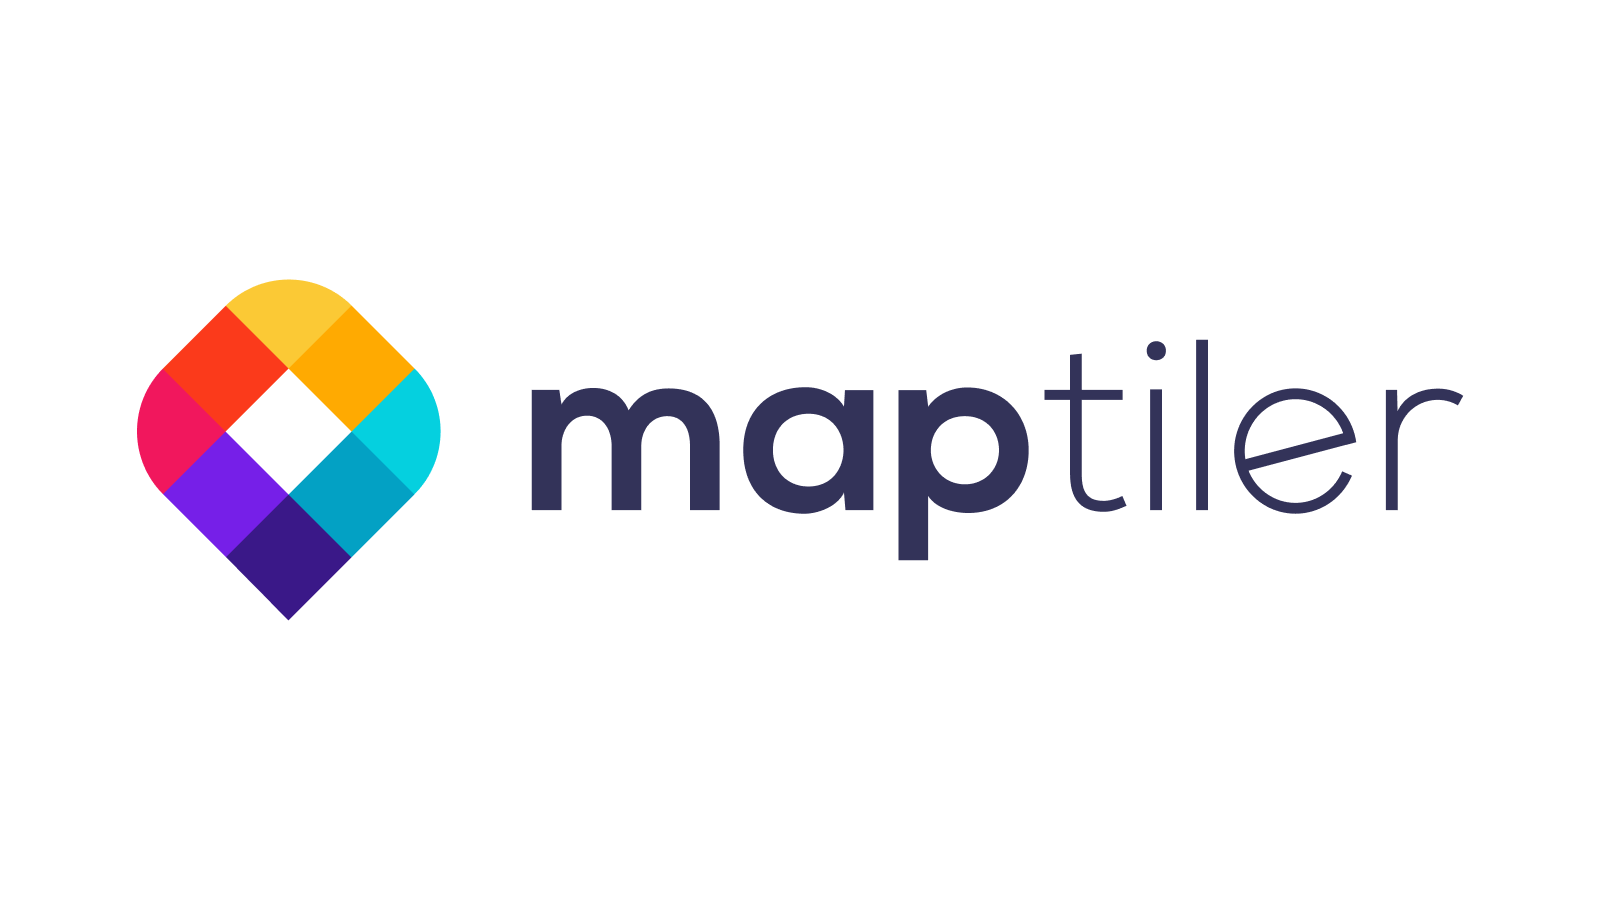 The new visual identity of MapTiler image